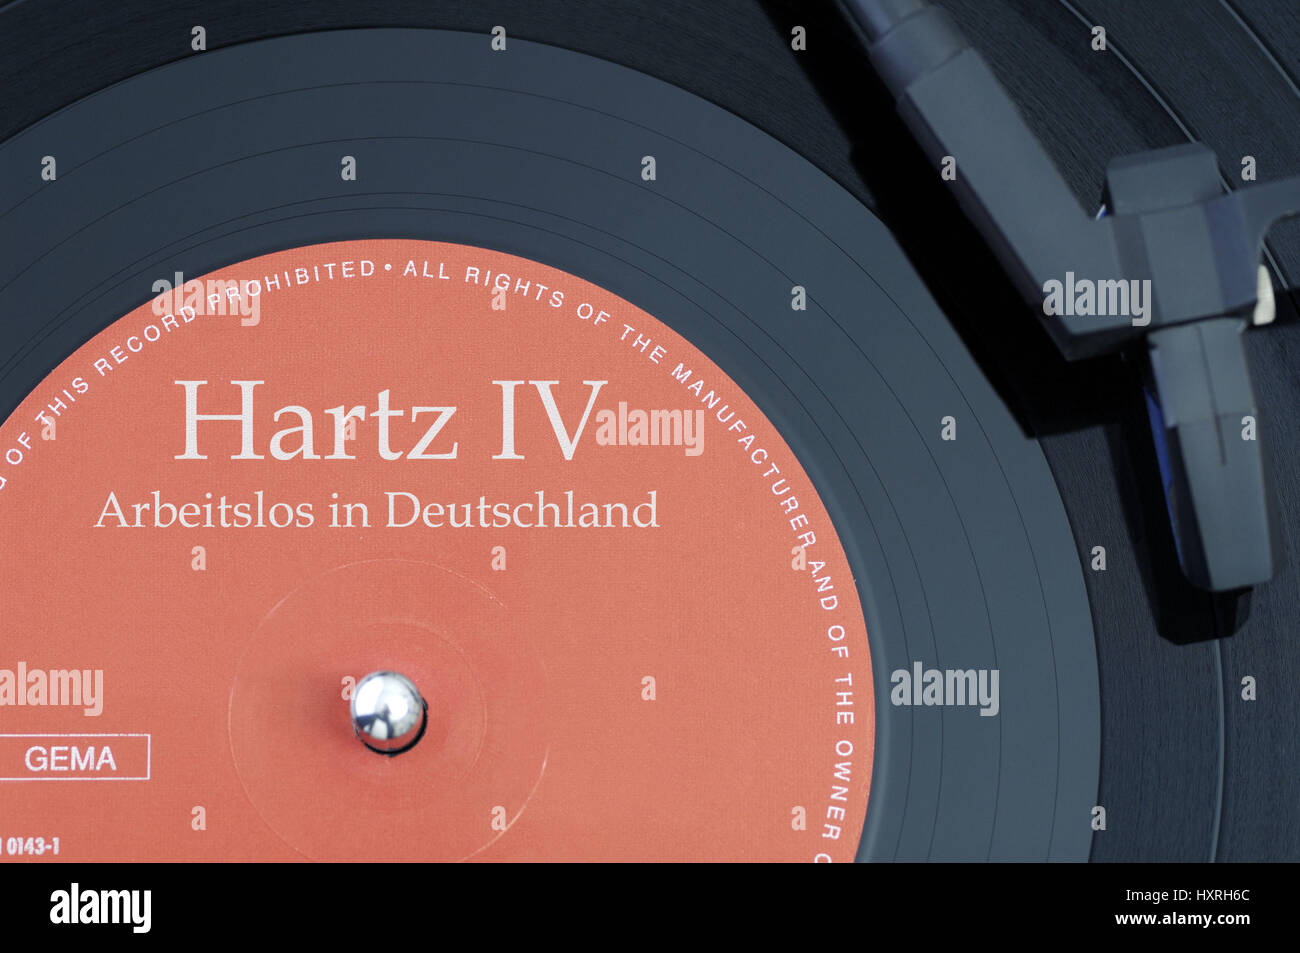 Registro con la etiqueta Hartz IV, desempleados en Alemania, mit der Aufschrift Schallplatte Hartz IV, Arbeitslos in Deutschland Foto de stock